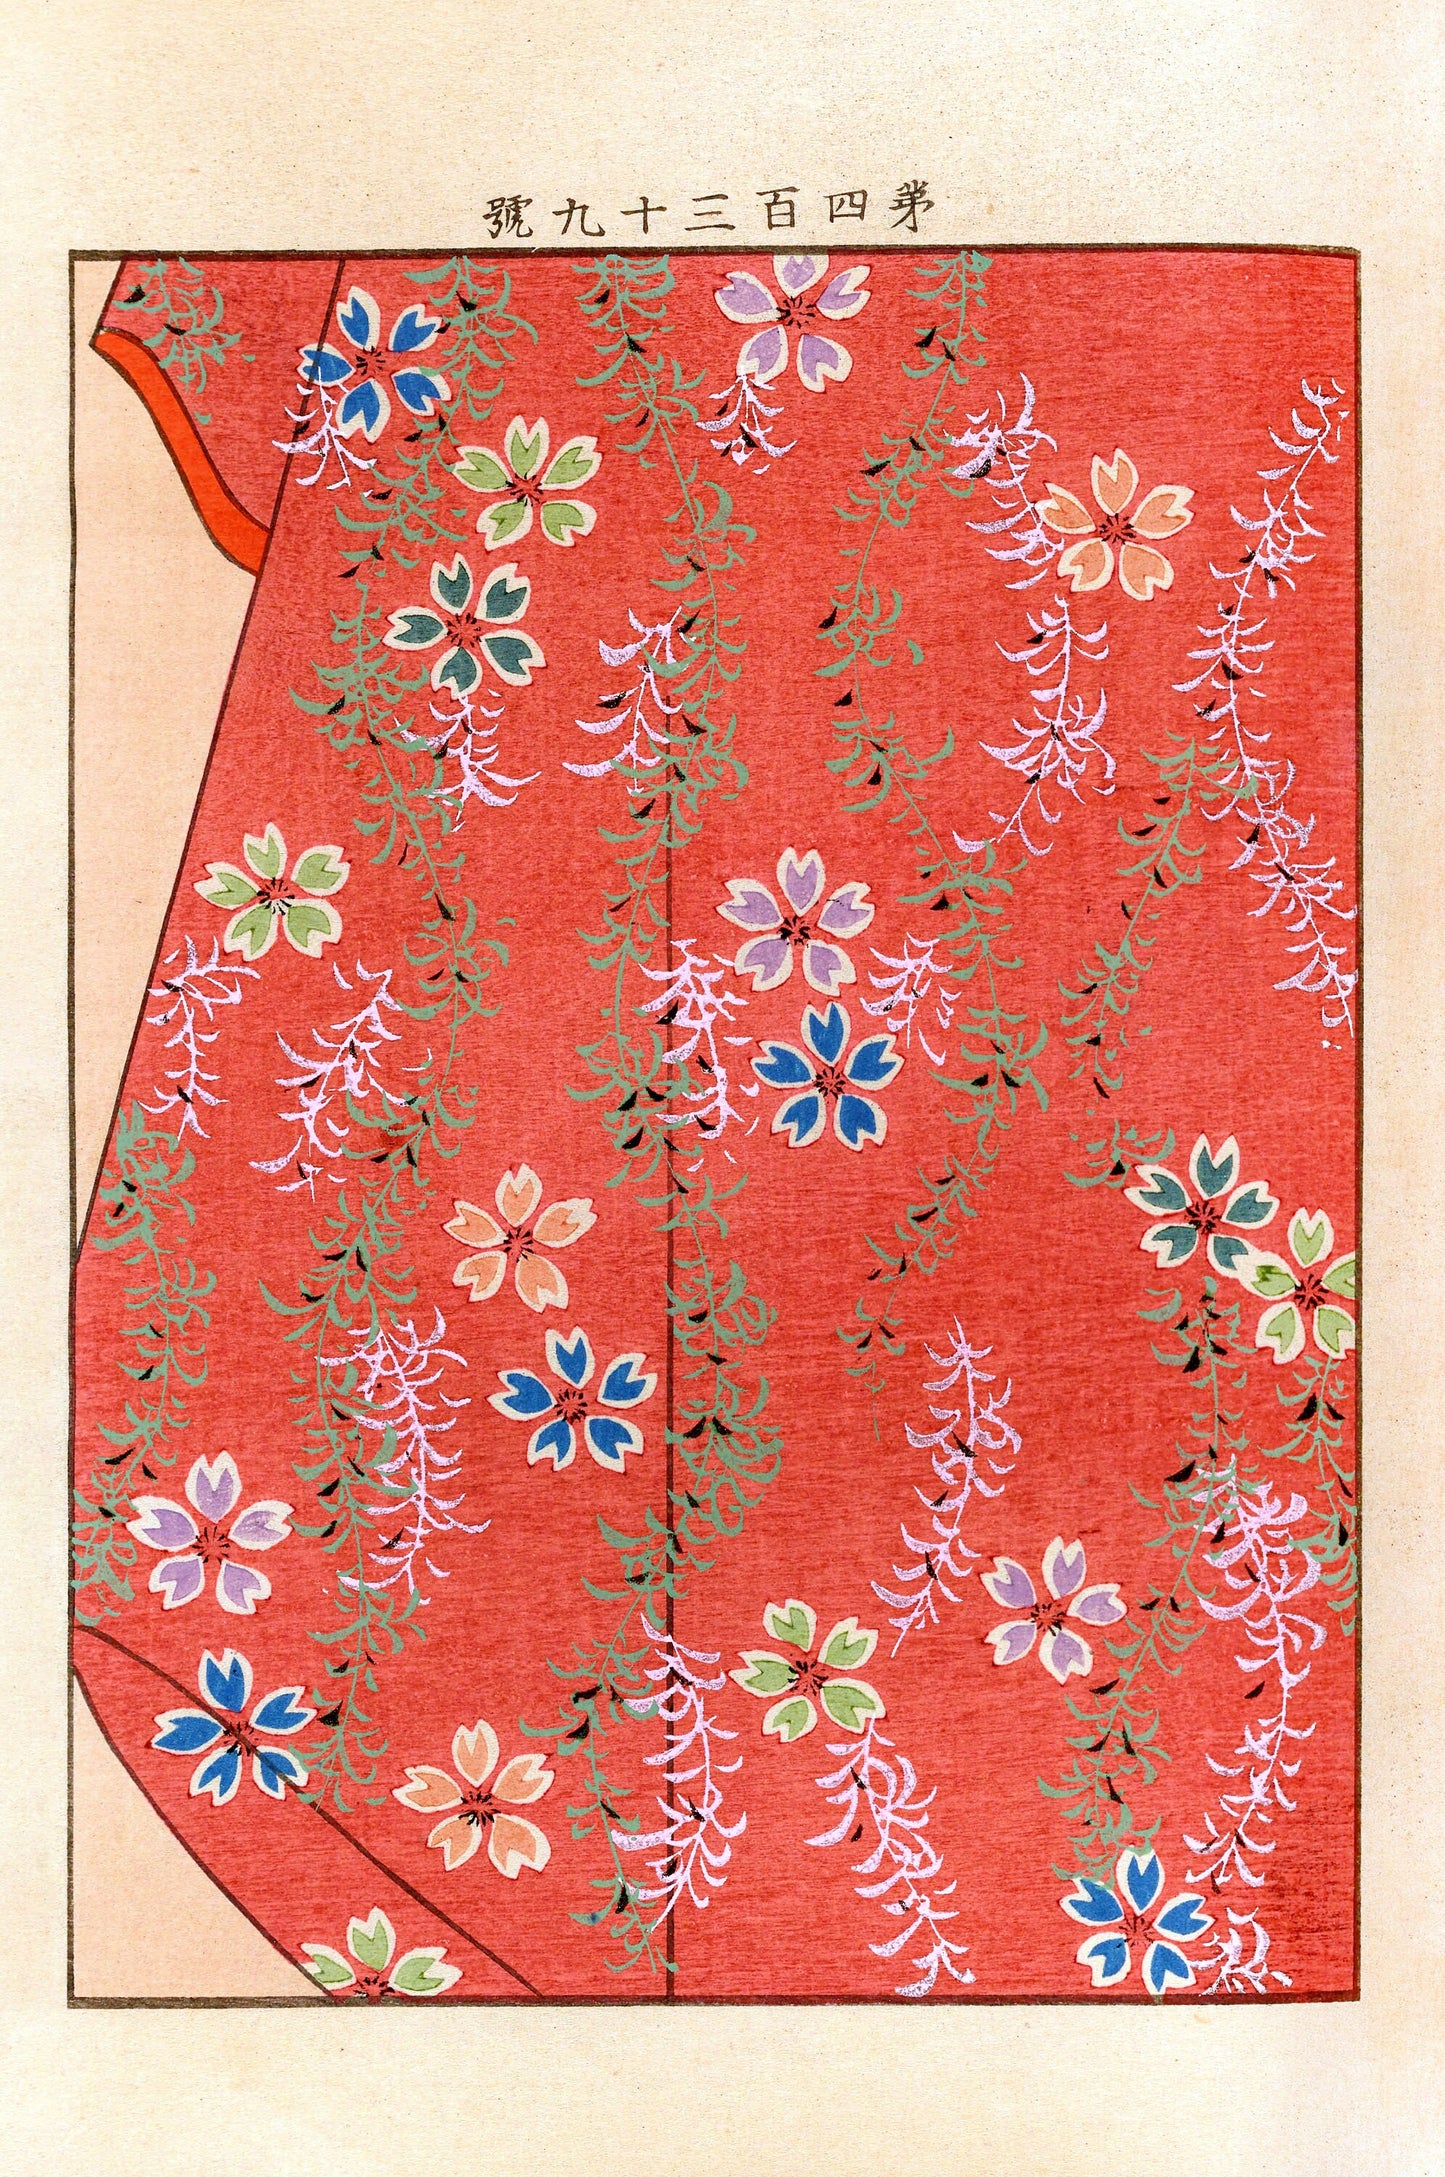 Yachigusa Kimono Design Seikō Ueno Set 2 [30 Images]